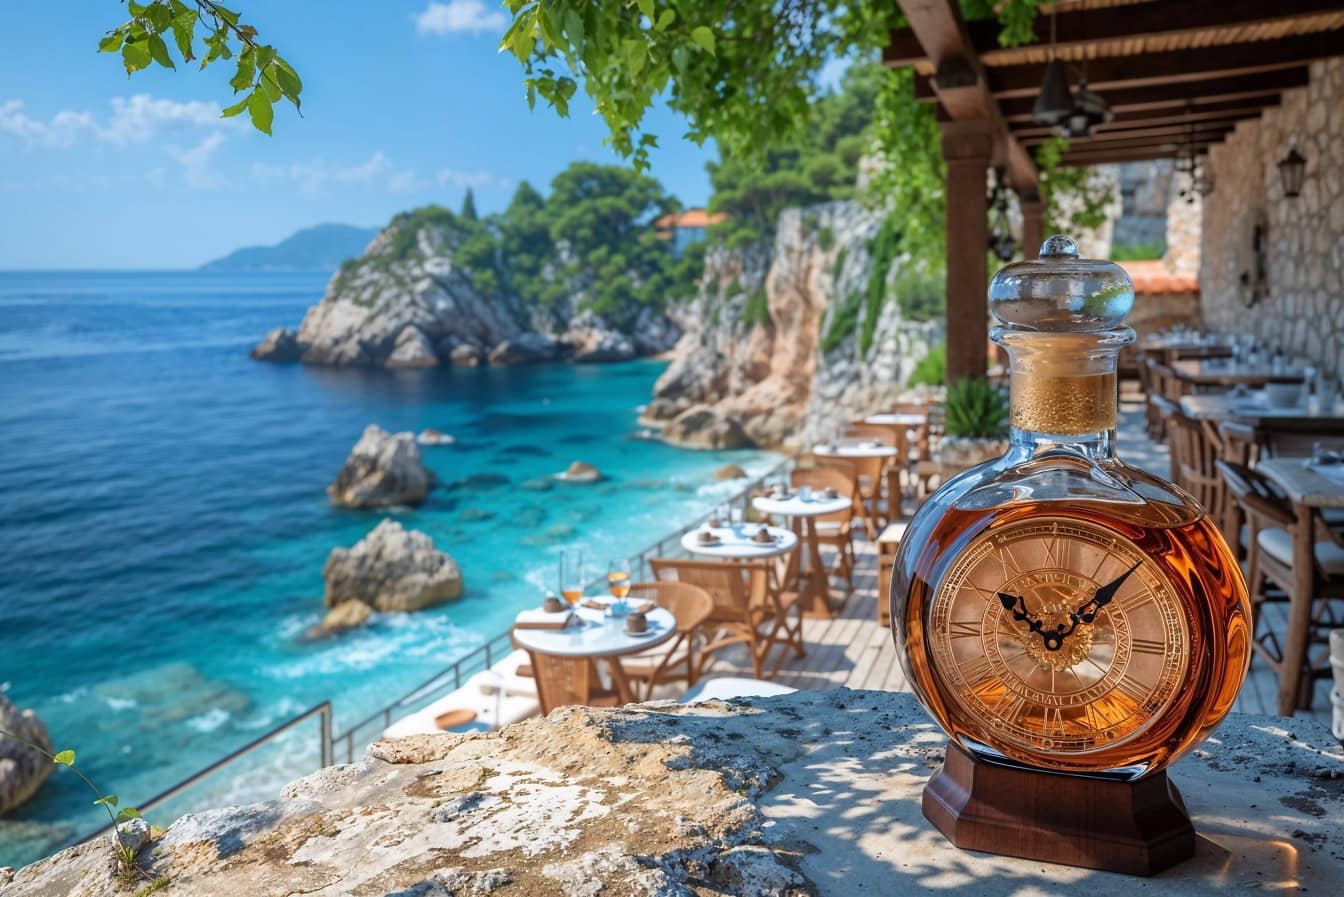 Mistrovská ručně vyráběná láhev likéru v podobě karafových hodinek na stole restaurace u pláže